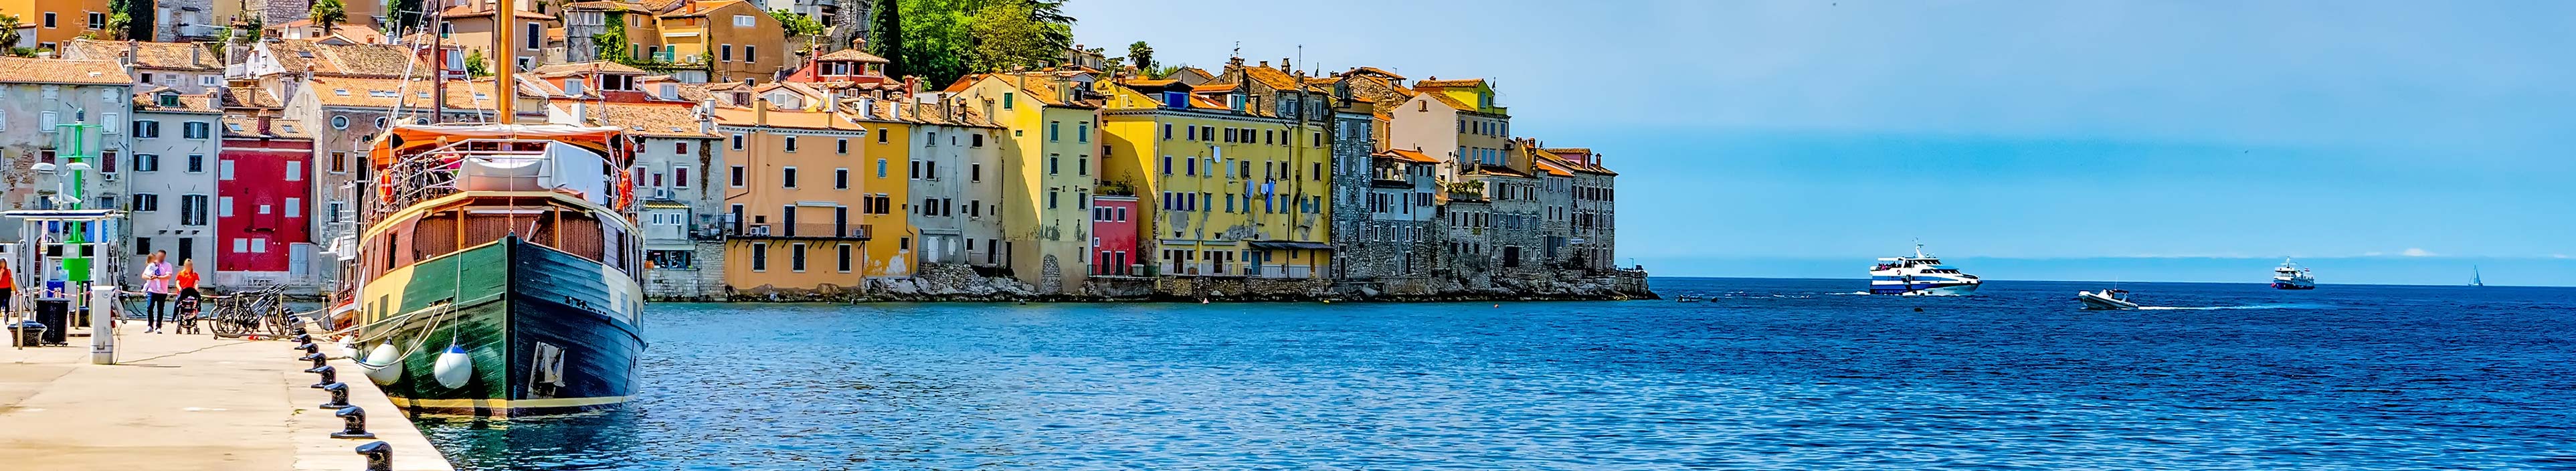 Altstadt und Hafen Rovinj, Kroatien, Istrien